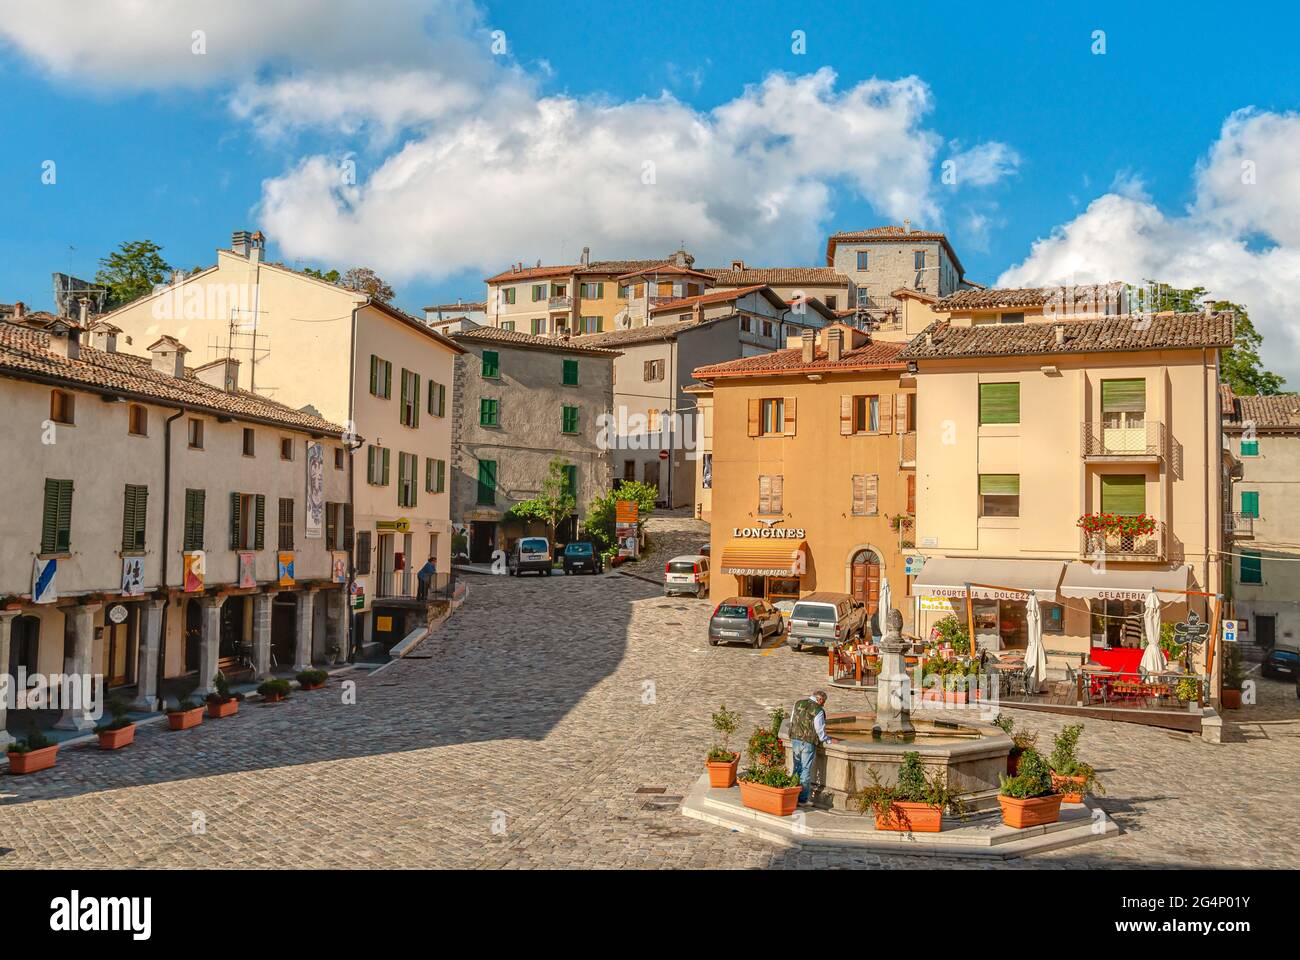 Piazza im historischen Stadtzentrum von Pennabilli in Emilia-Romagna, Nord-Italien. Stockfoto